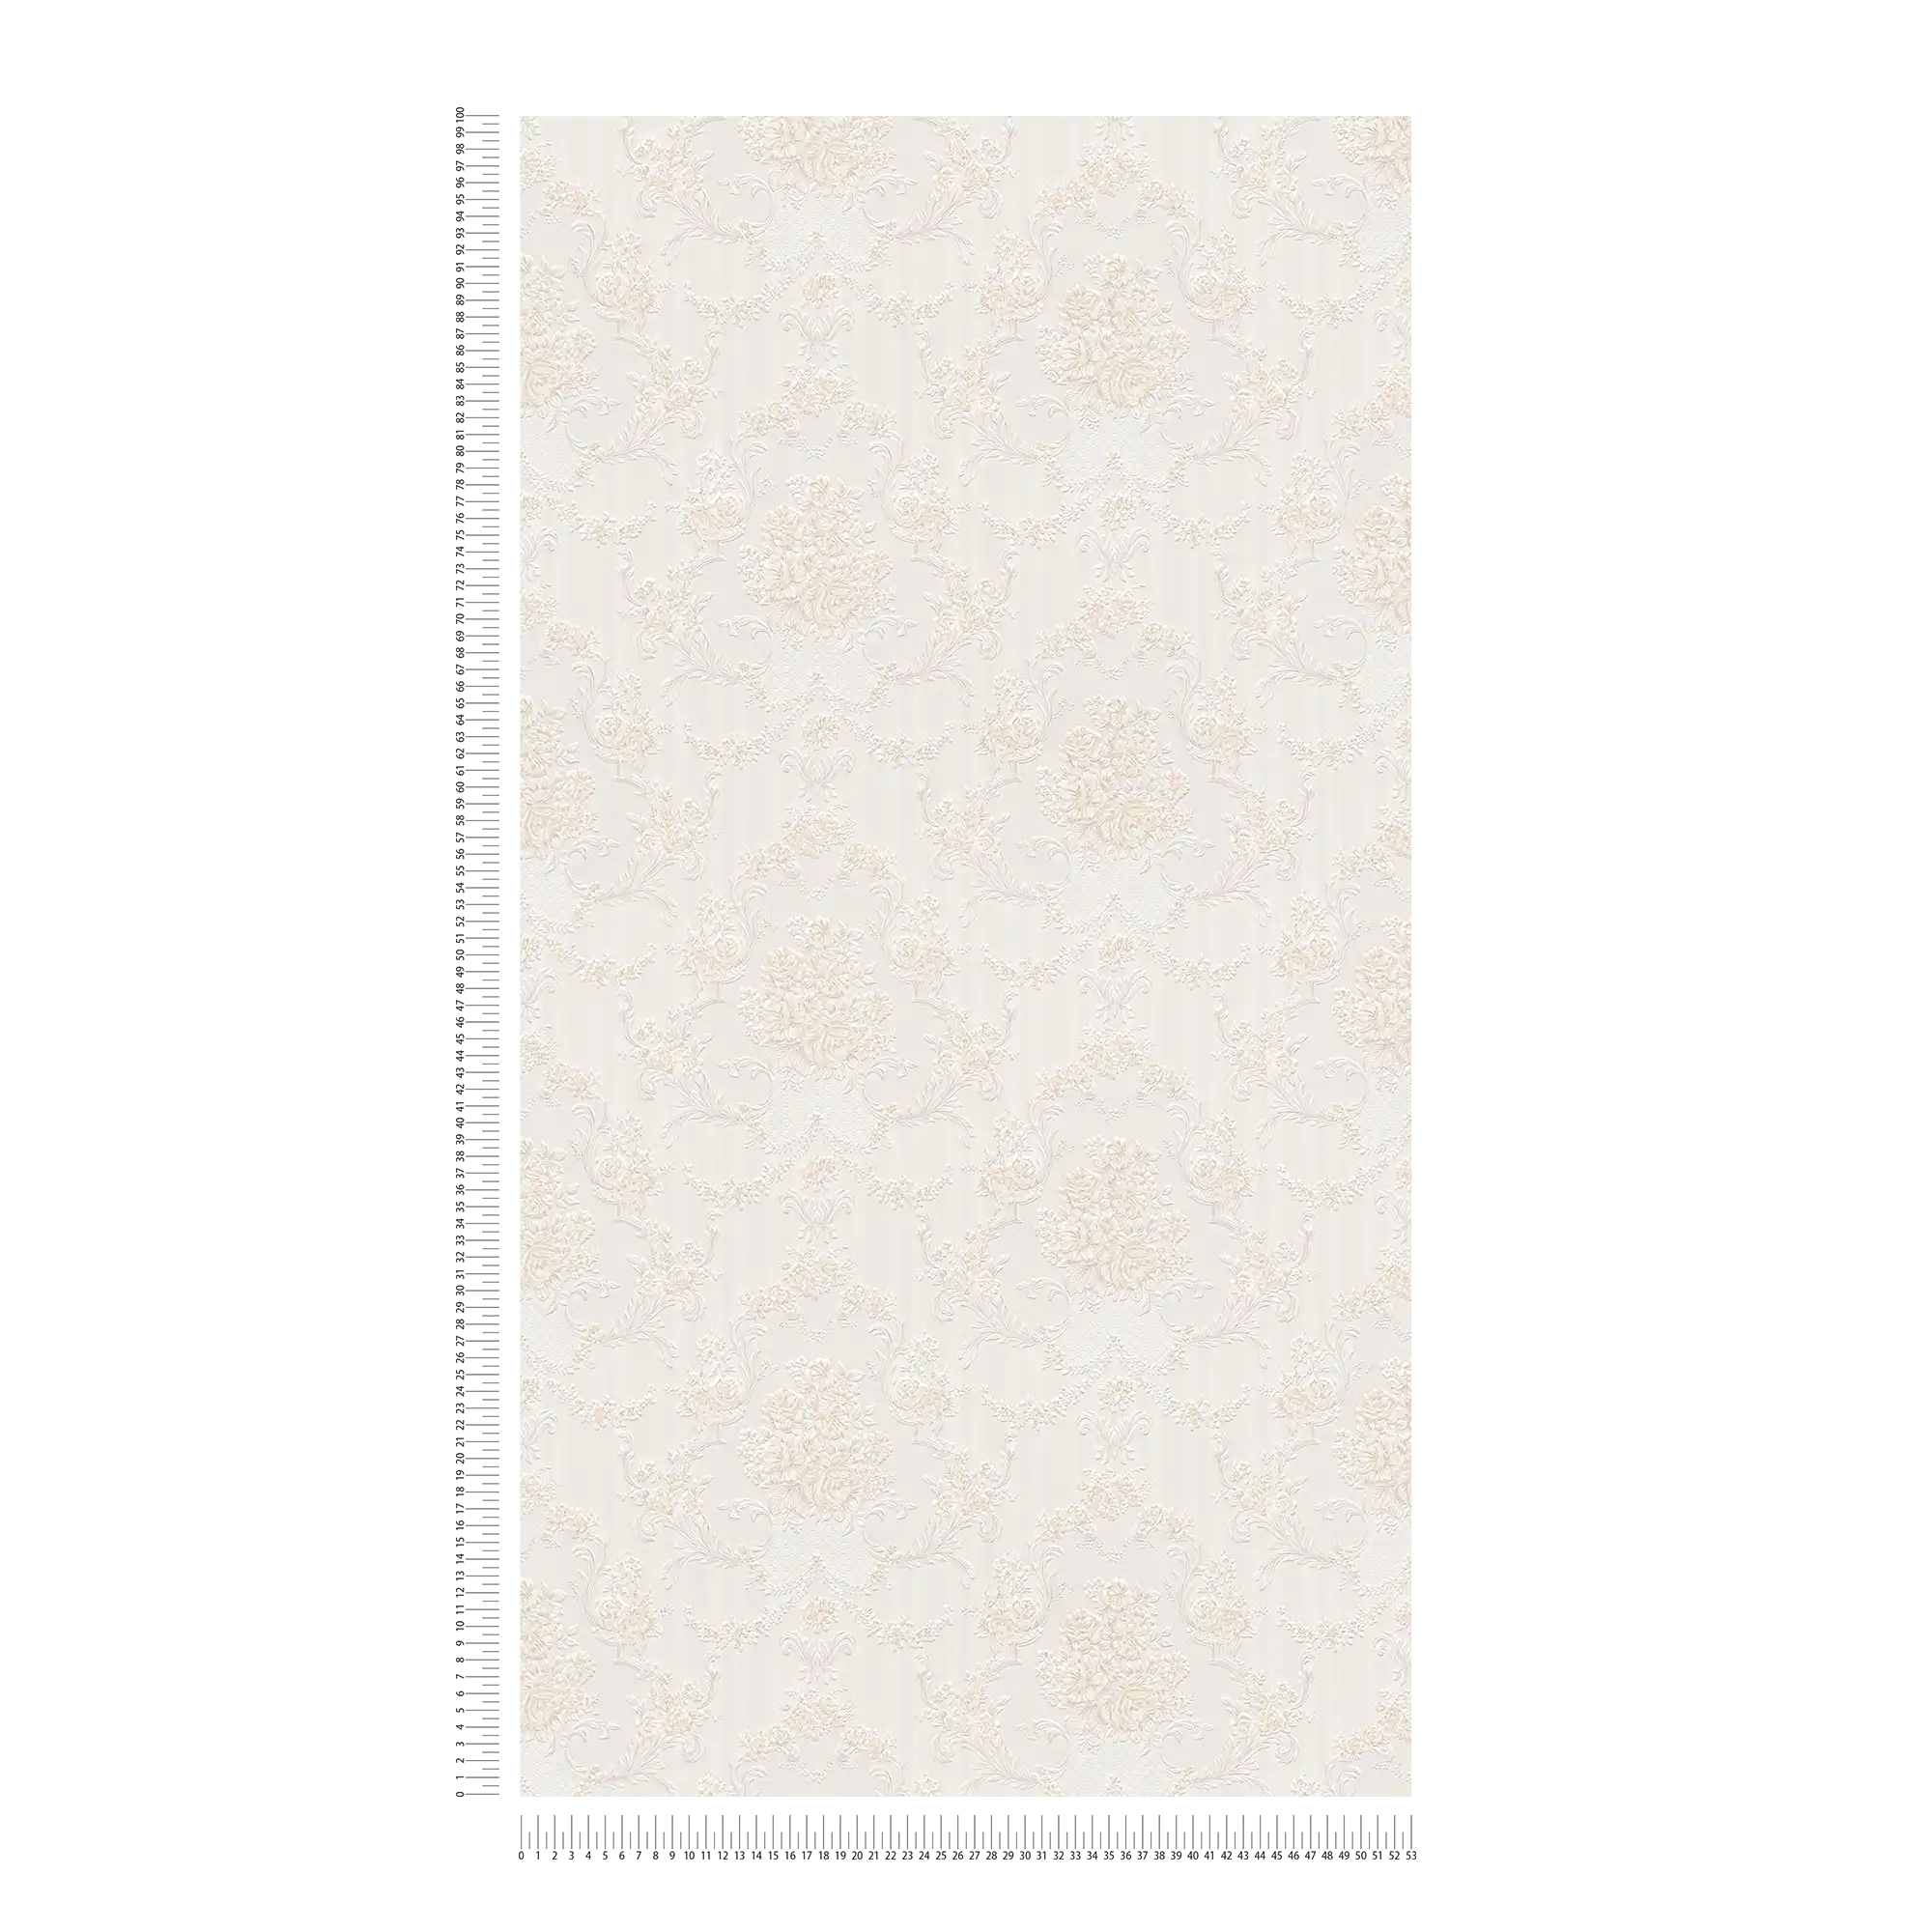             Neobarock Papiertapete mit Rosen-Ornamenten & Streifen – Beige
        